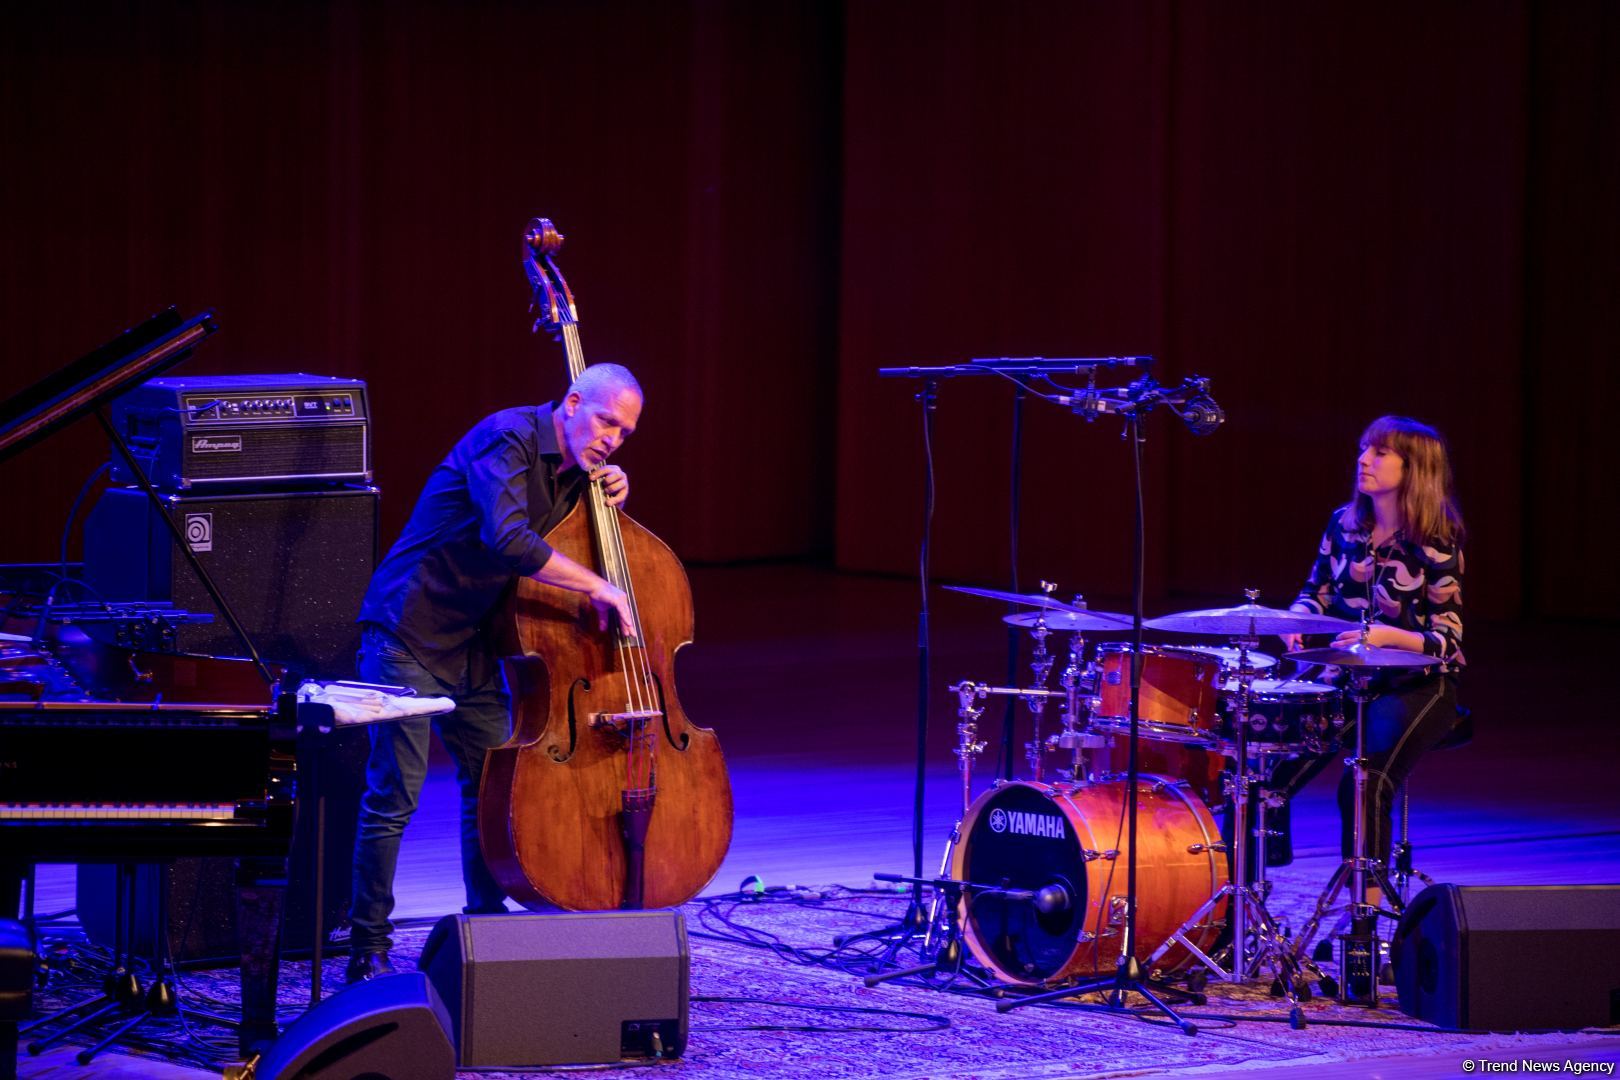 Heydər Əliyev Mərkəzində “Avişai Koen trio”nun caz konserti keçirilib (FOTO/VİDEO) - Gallery Image